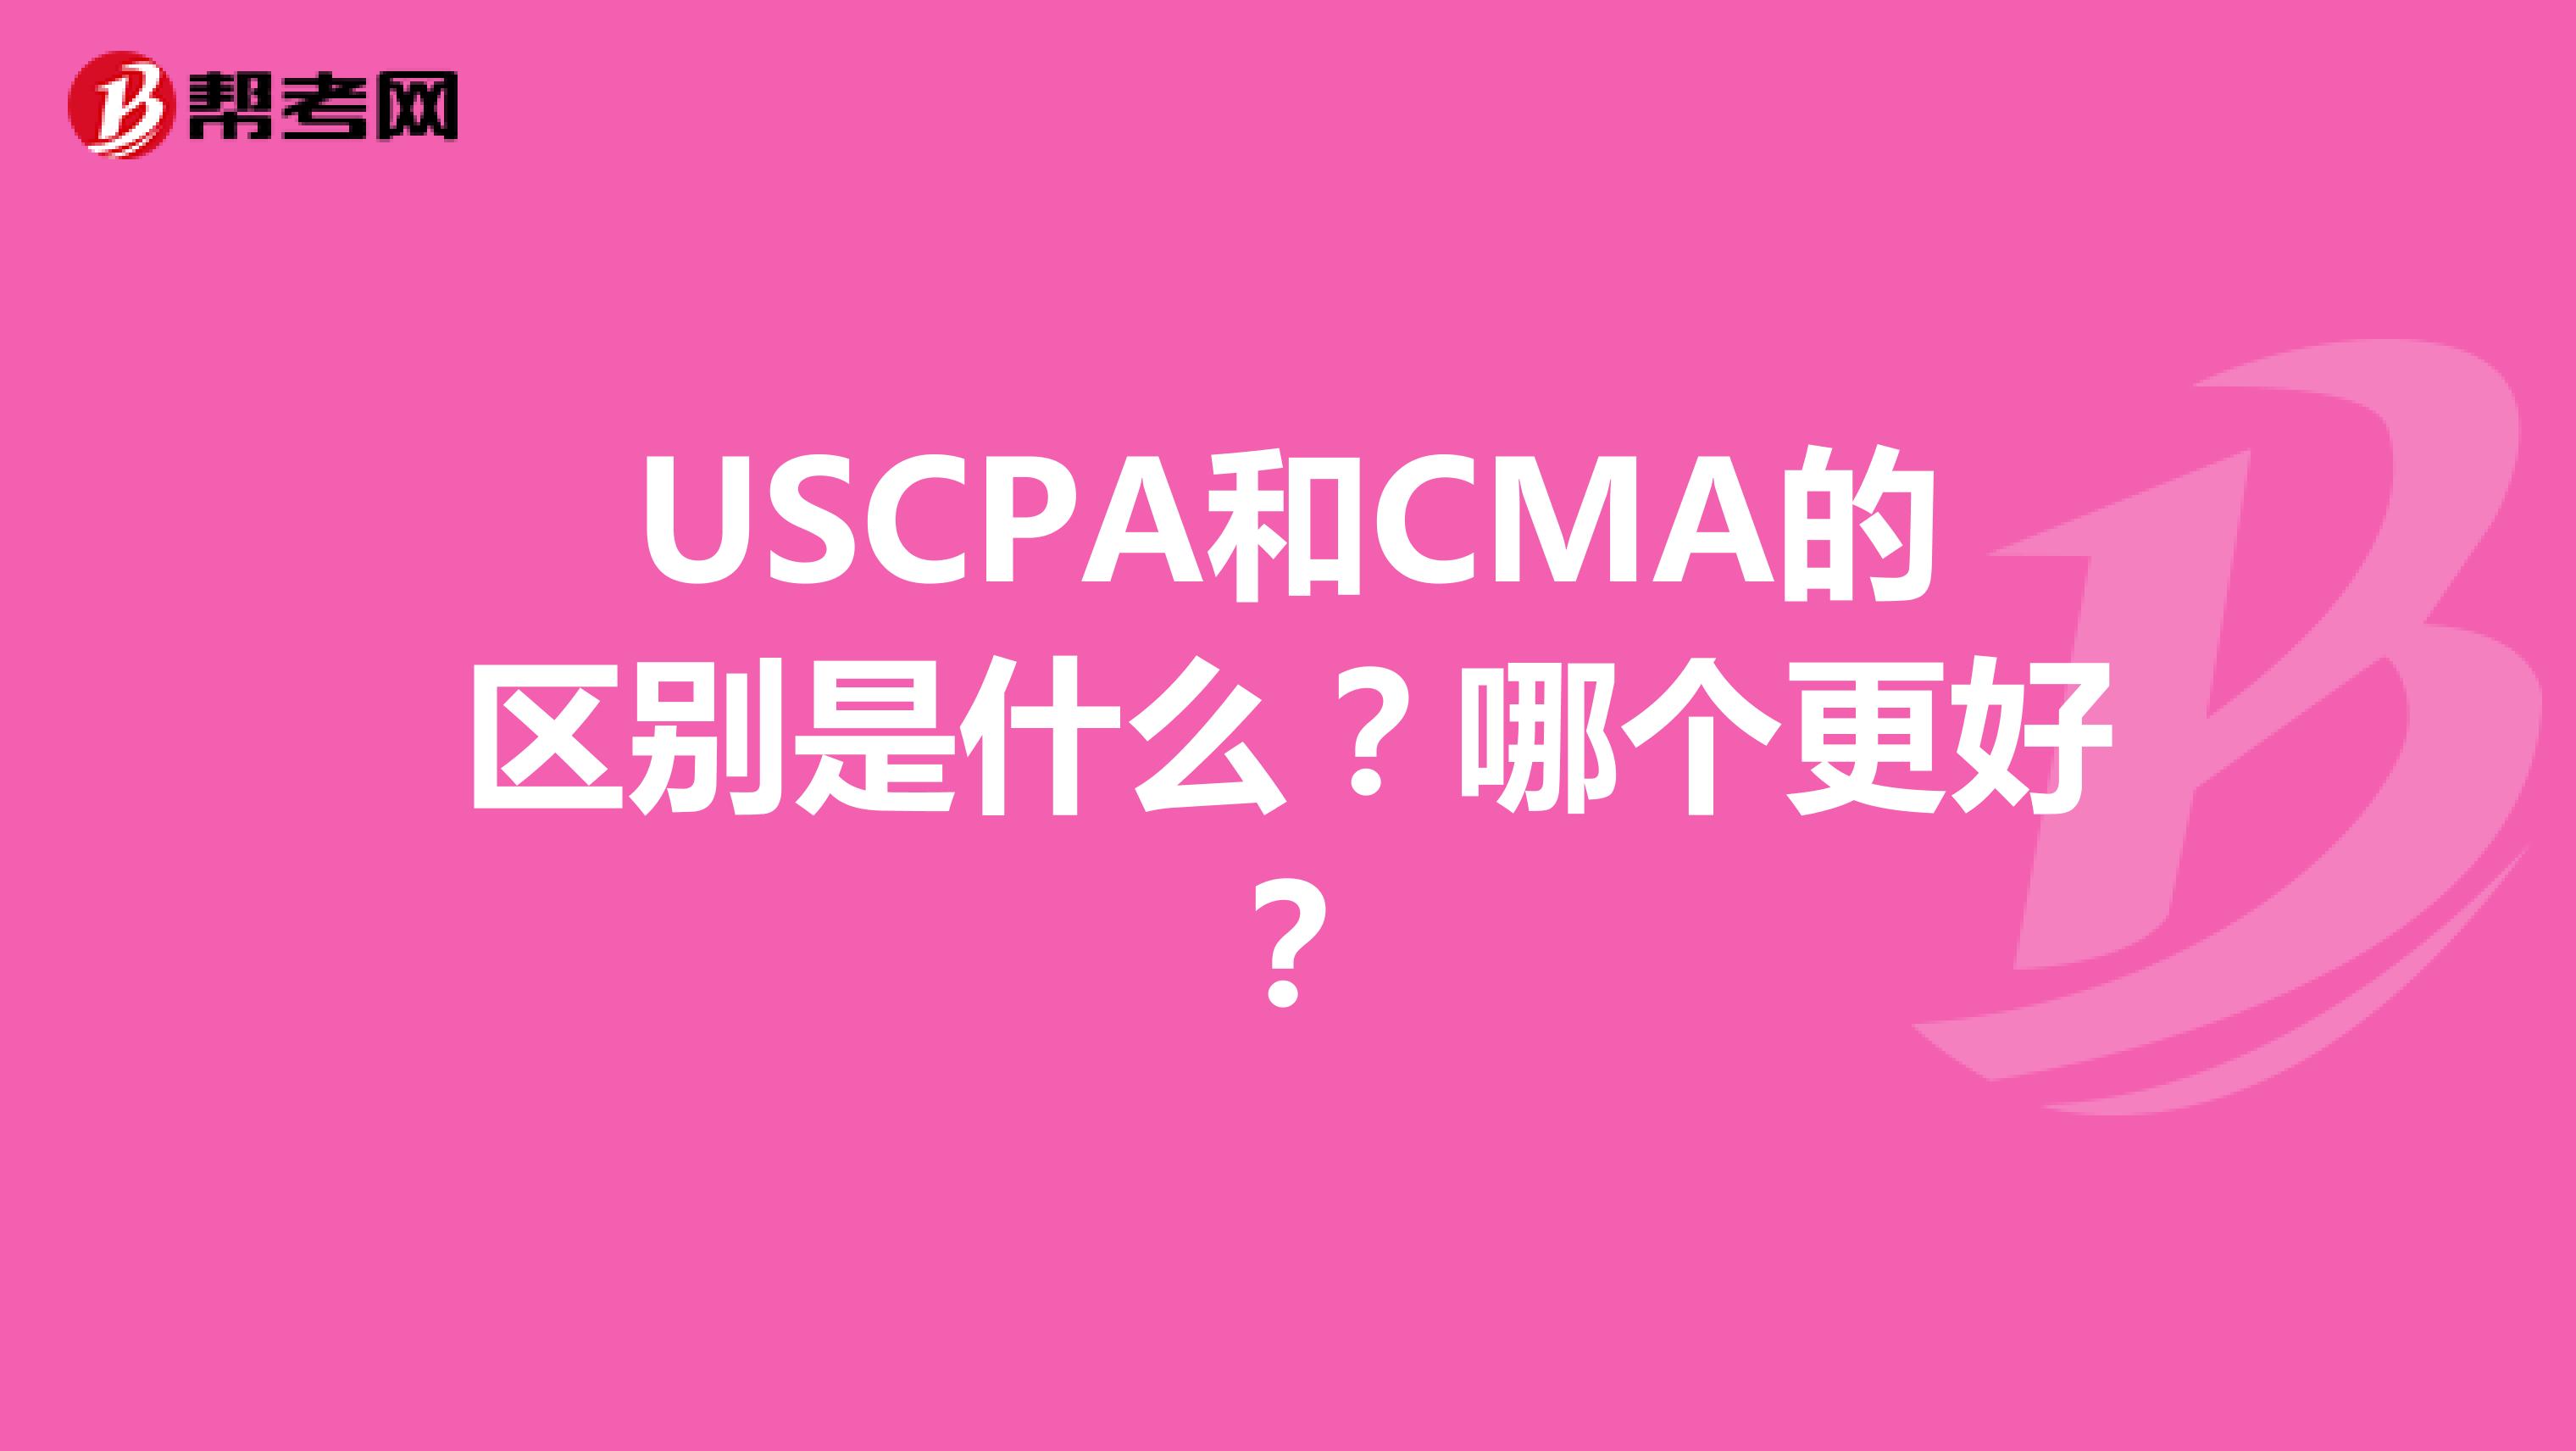 USCPA和CMA的区别是什么？哪个更好？